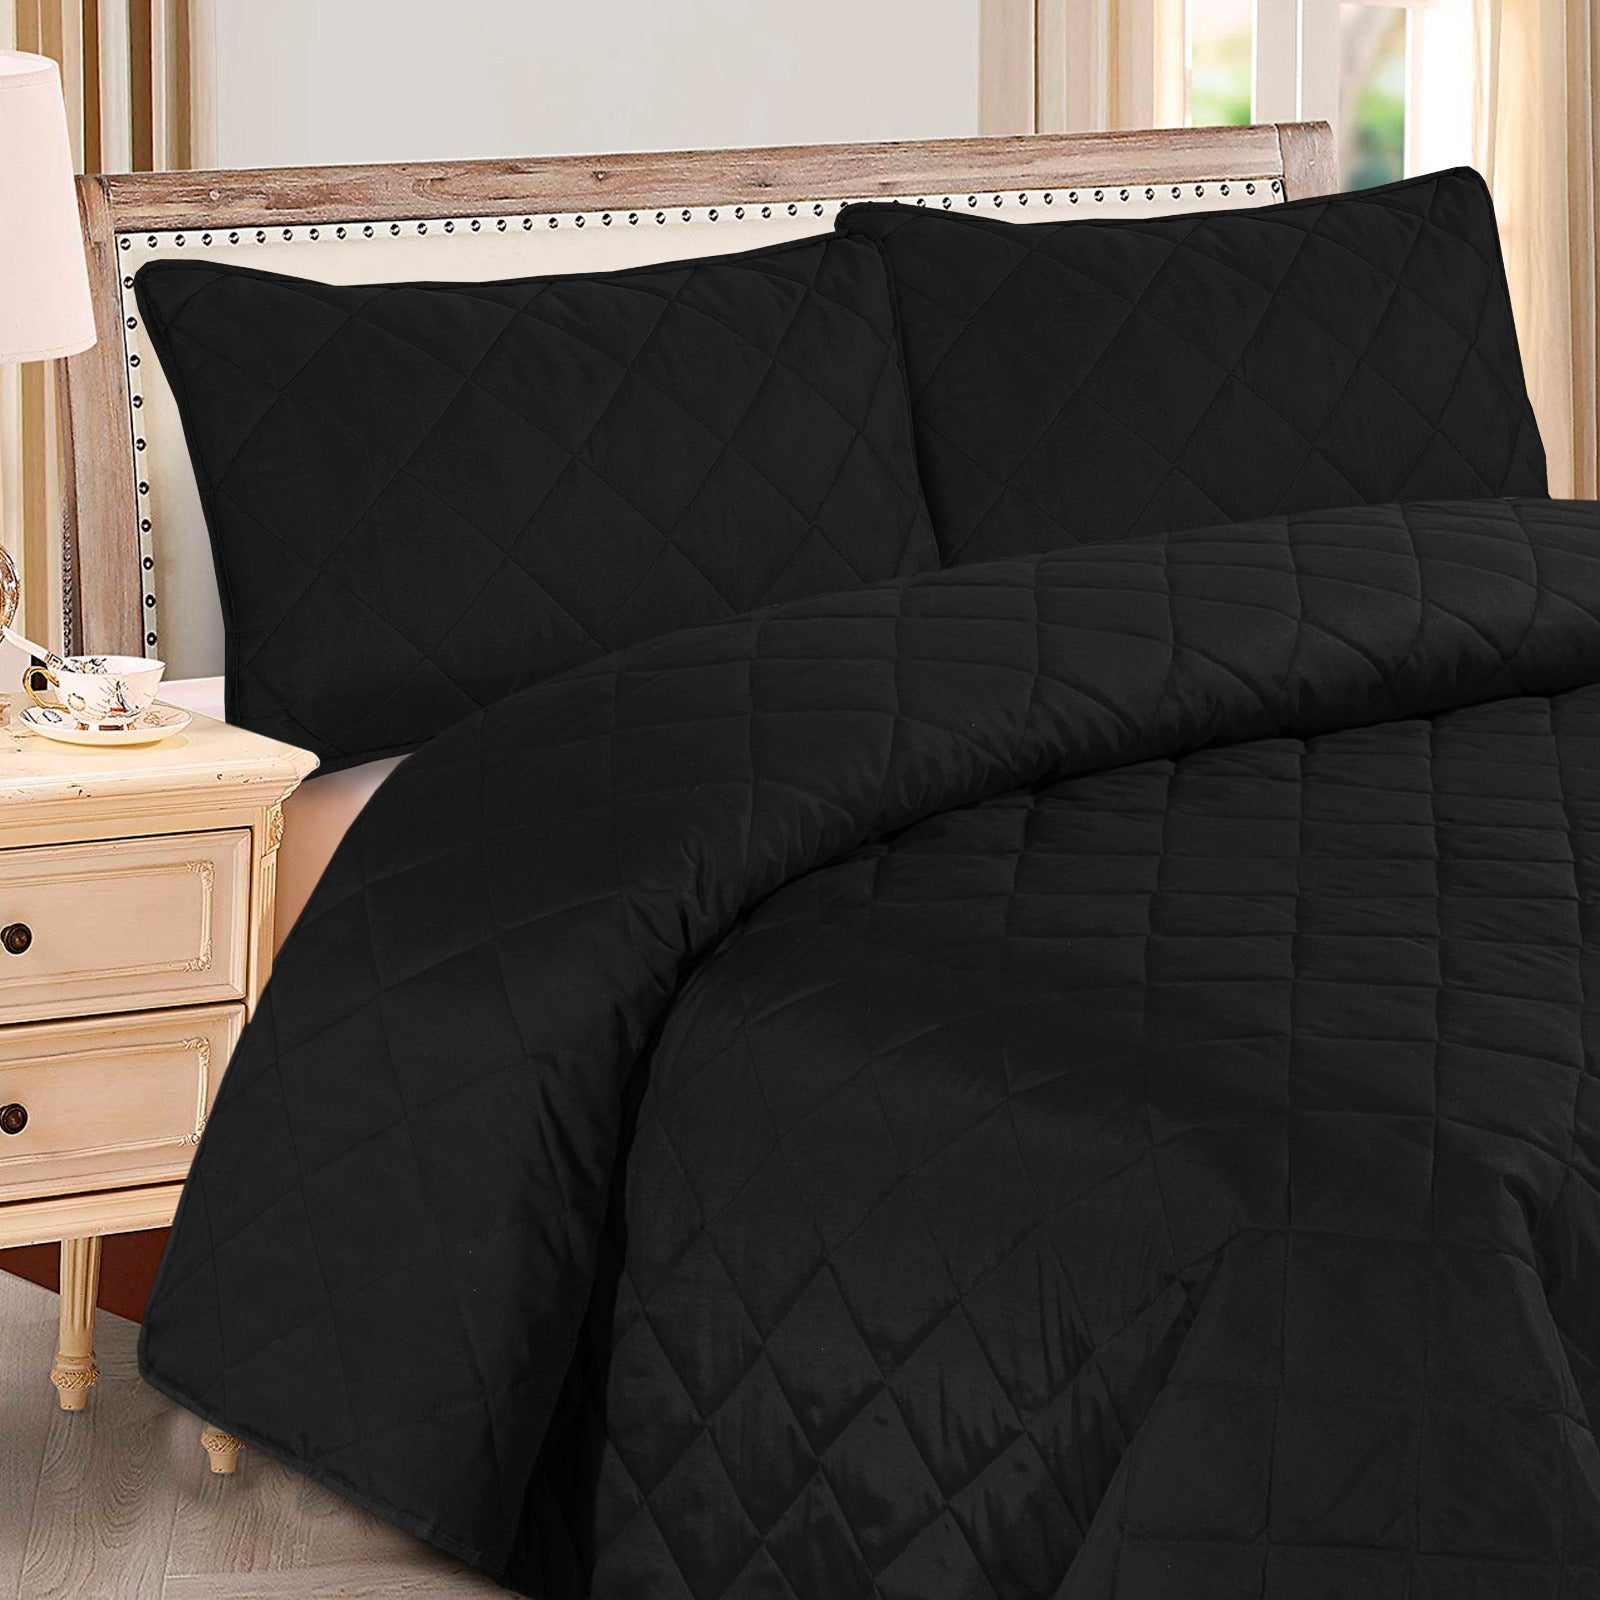 Black Plain- Summer Comforter Set (Light Filling)